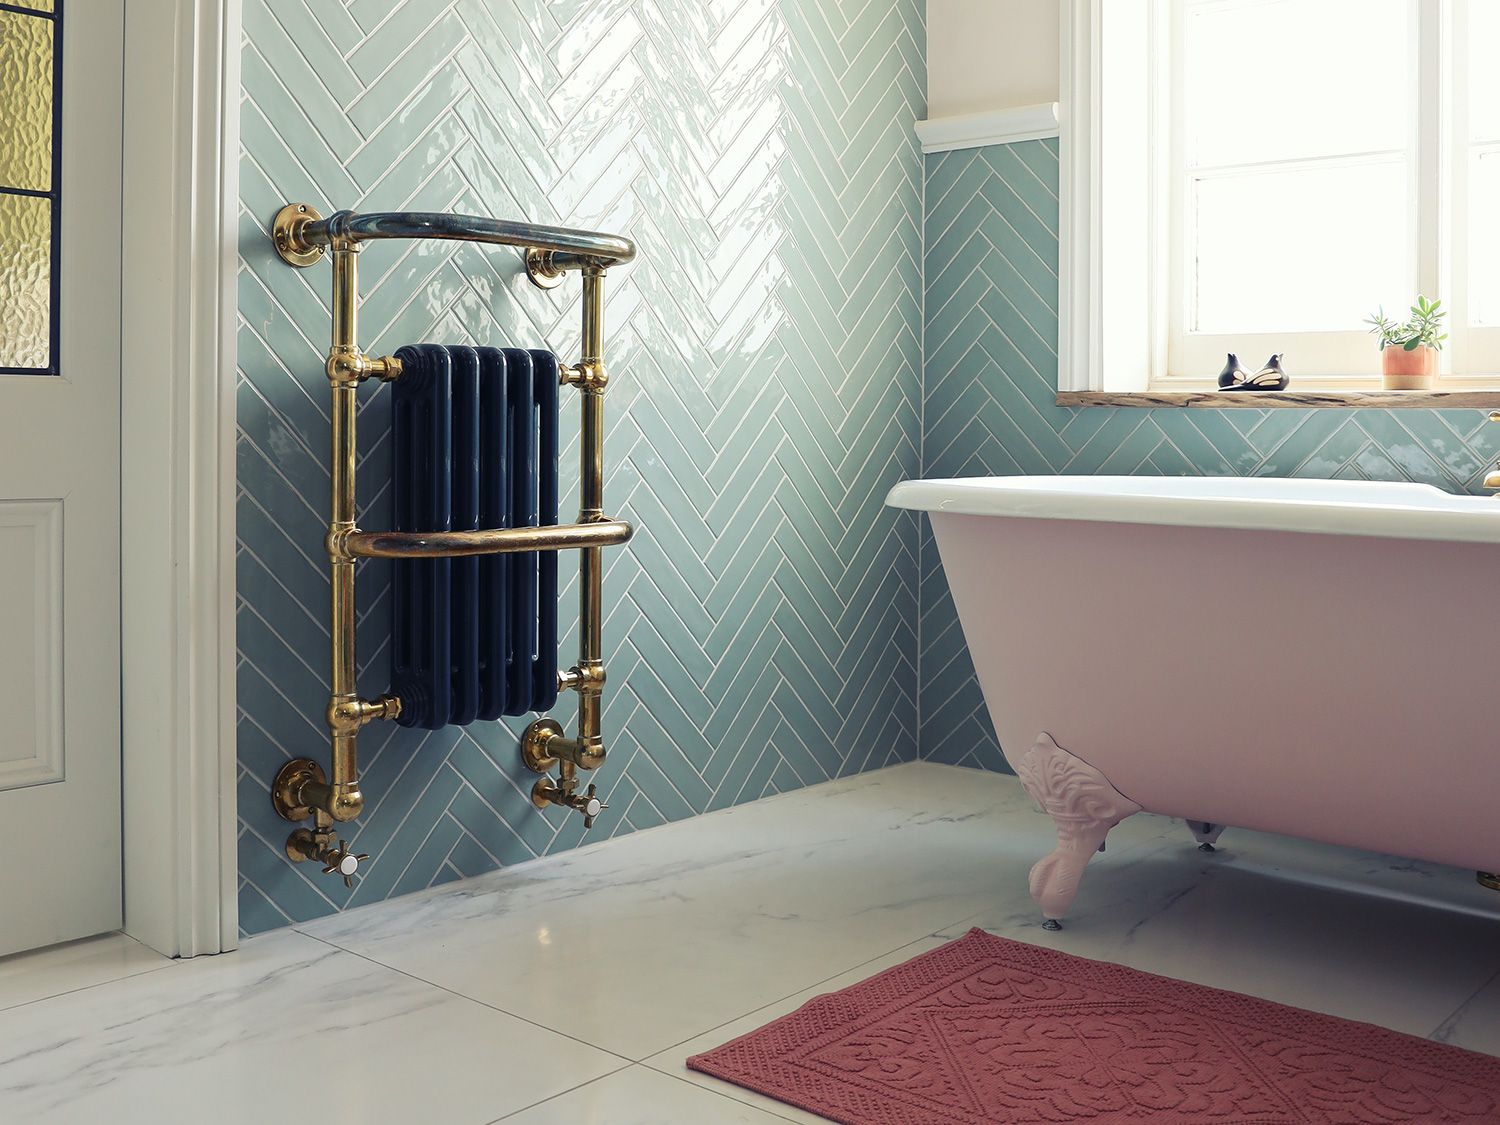 10 idee originali su come disporre le piastrelle in bagno